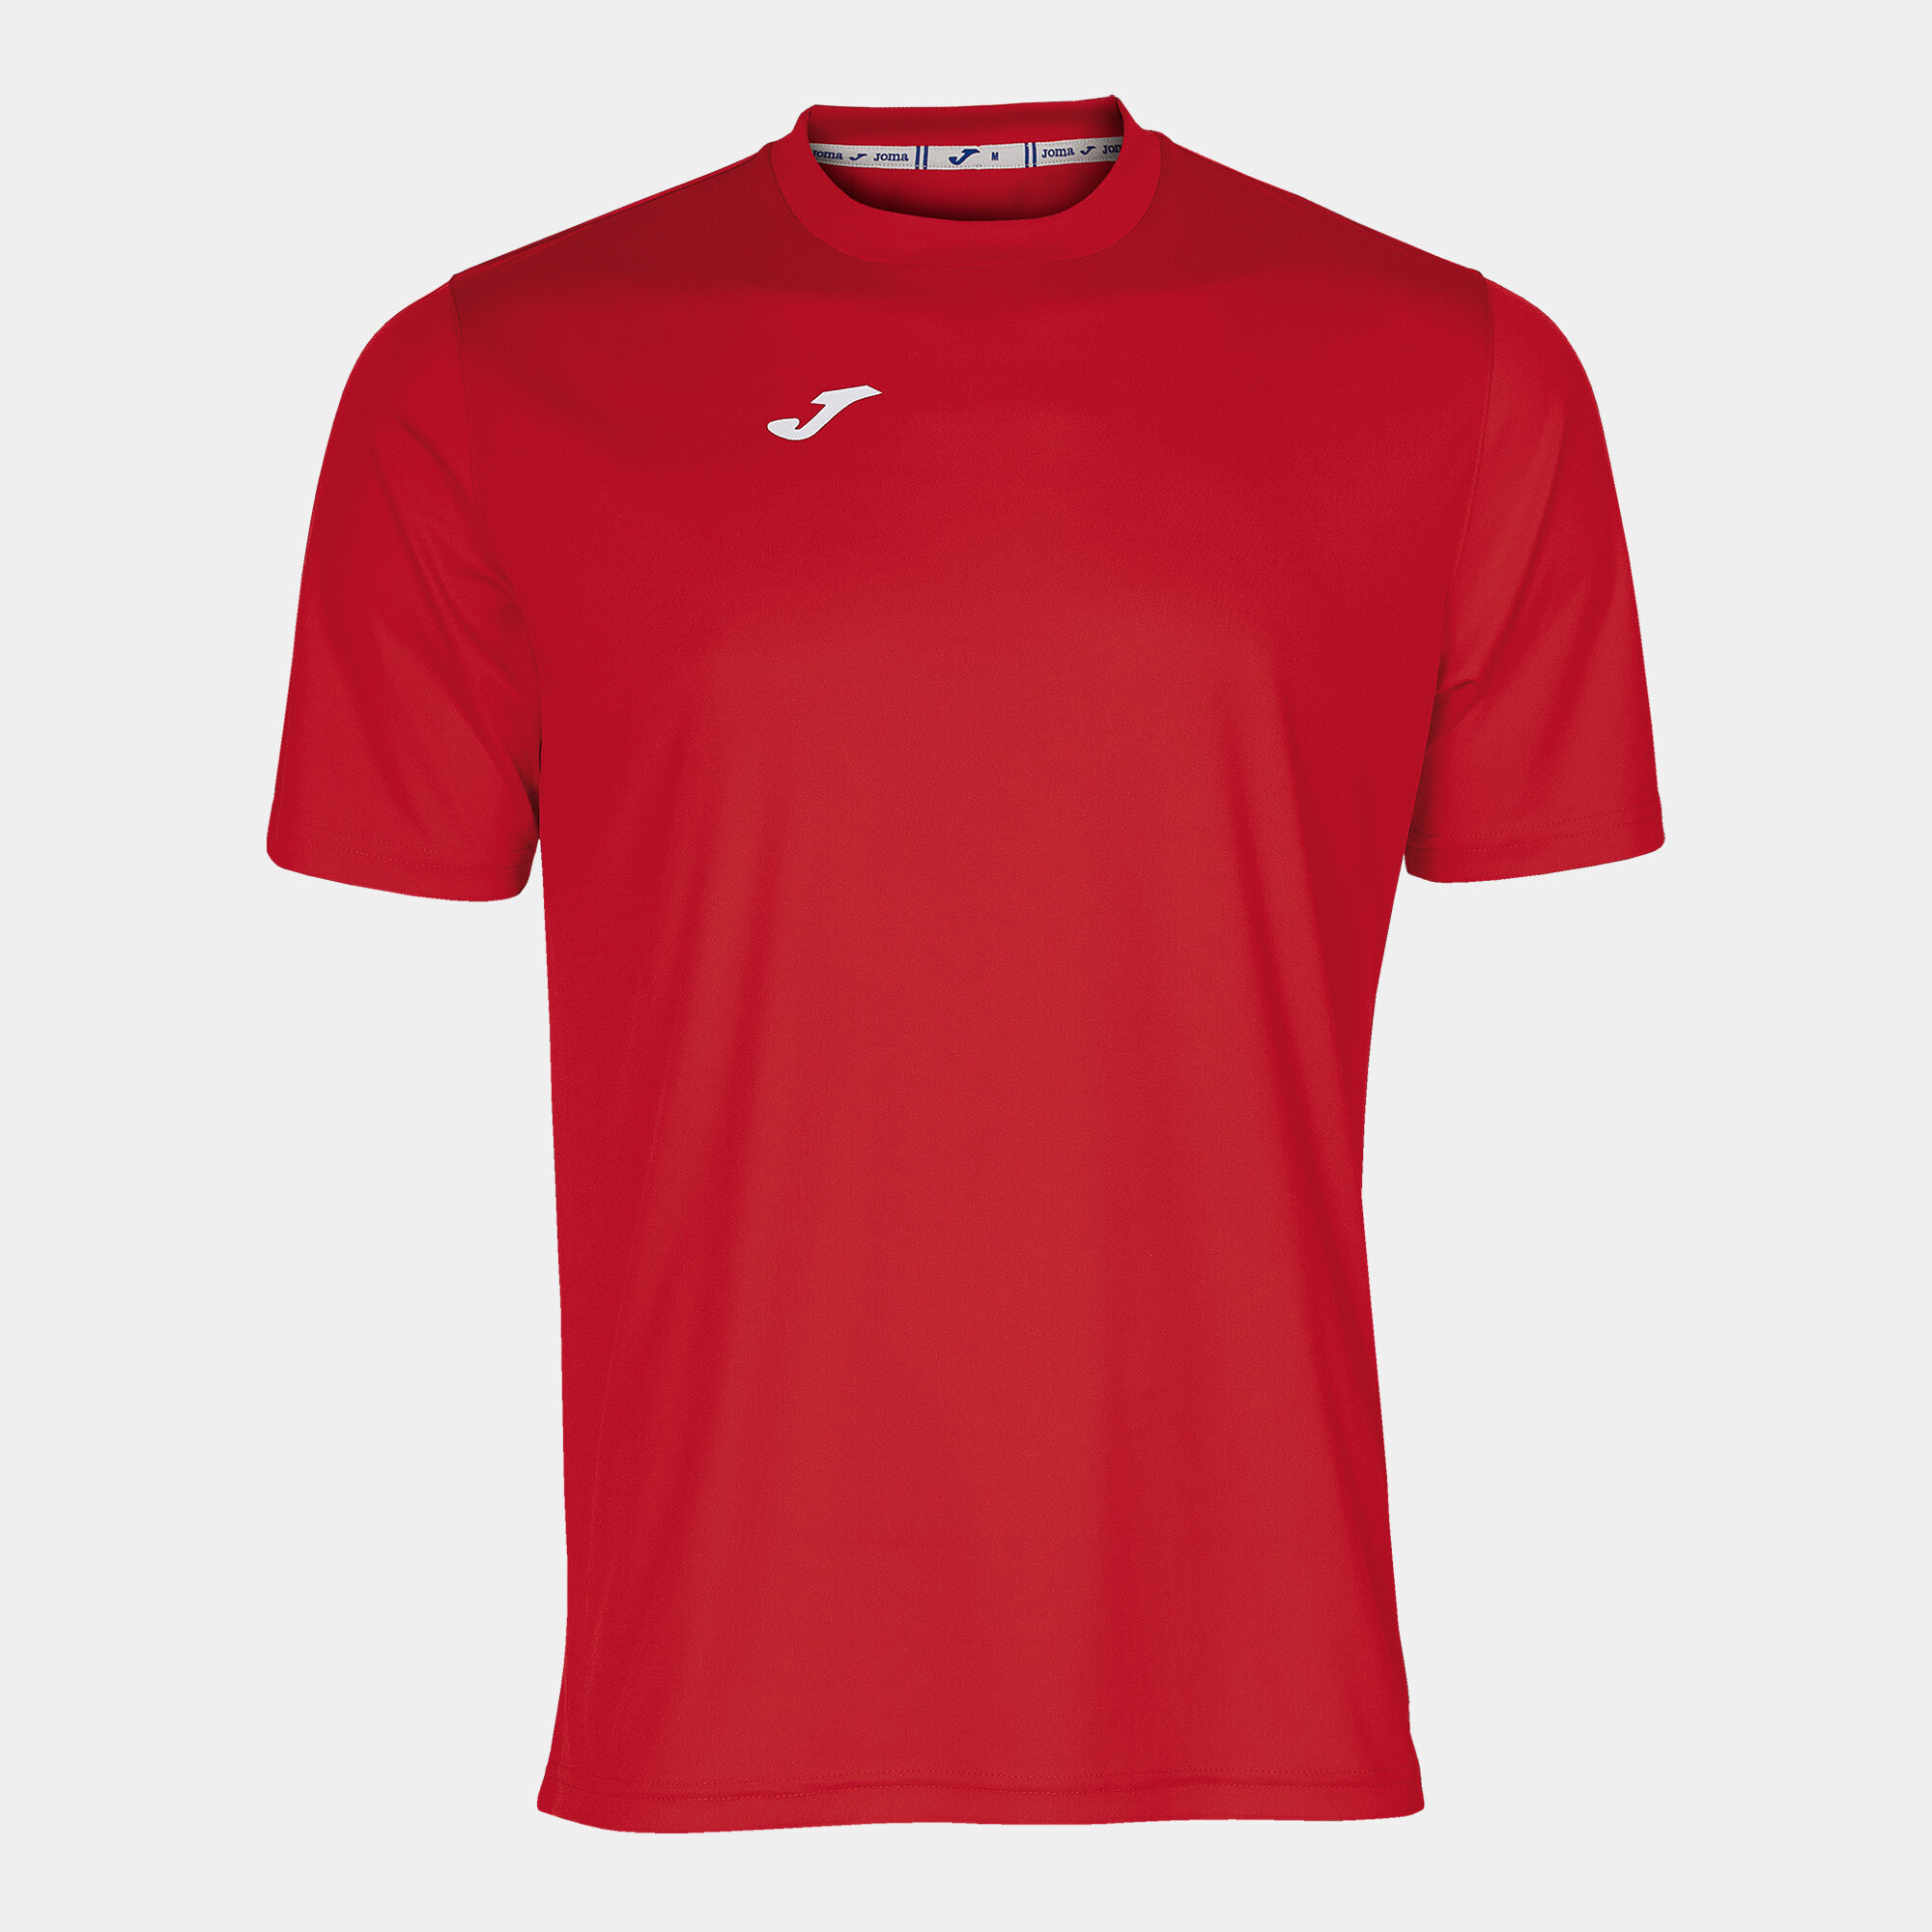 T-shirt manga curta homem Combi vermelho